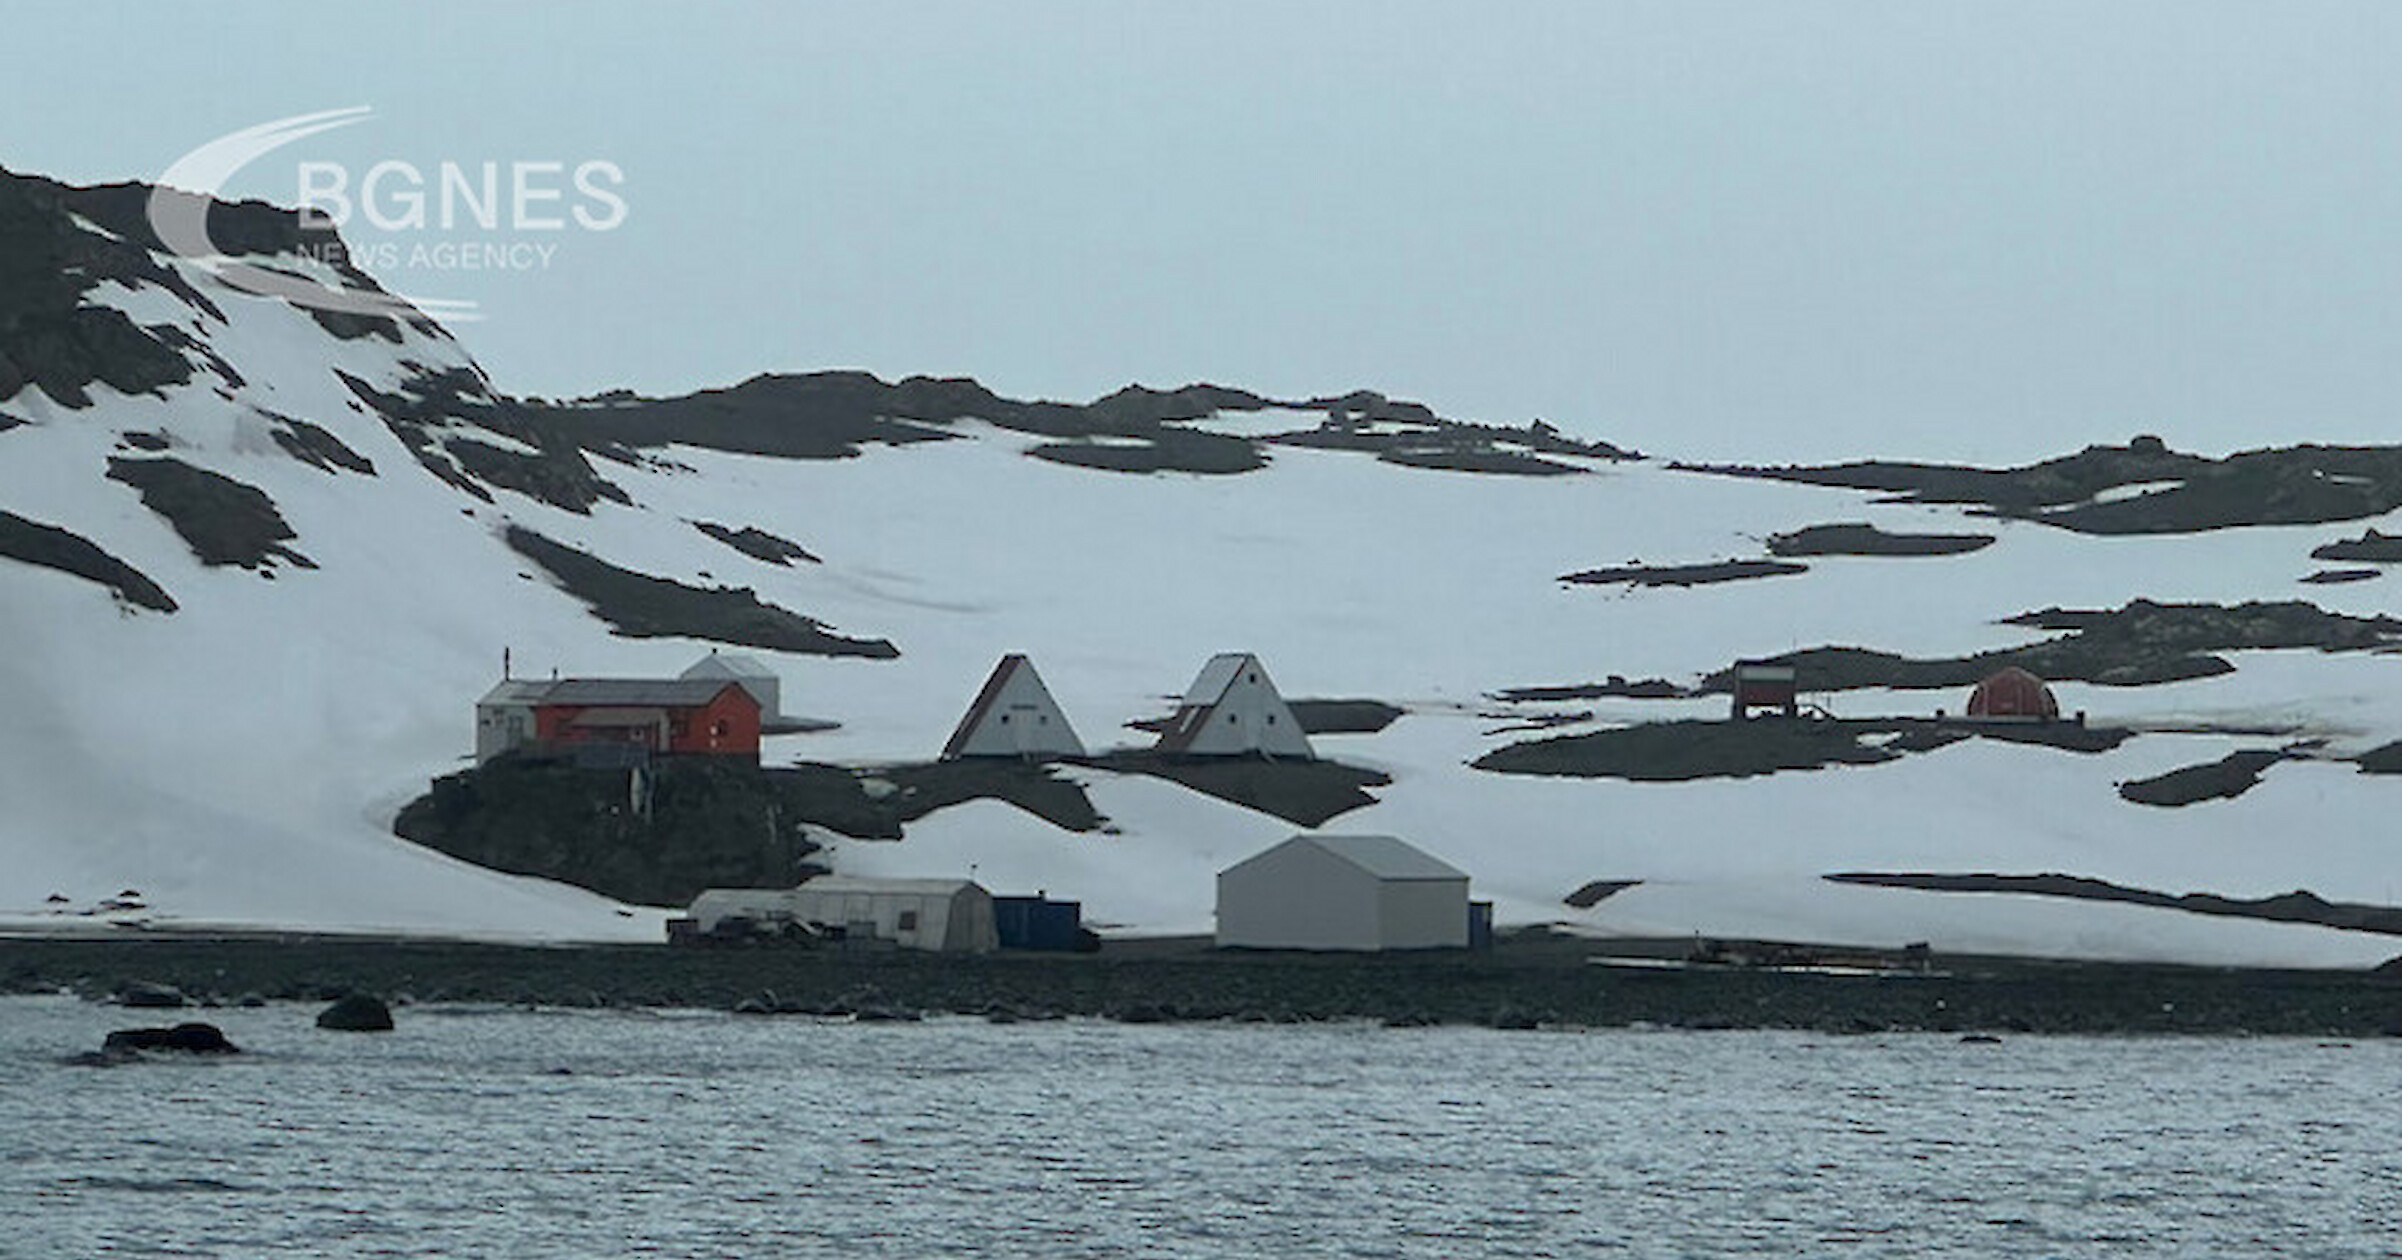 Българската антарктическа станция на остров Ливингстън Св. Климент Охридски“ е